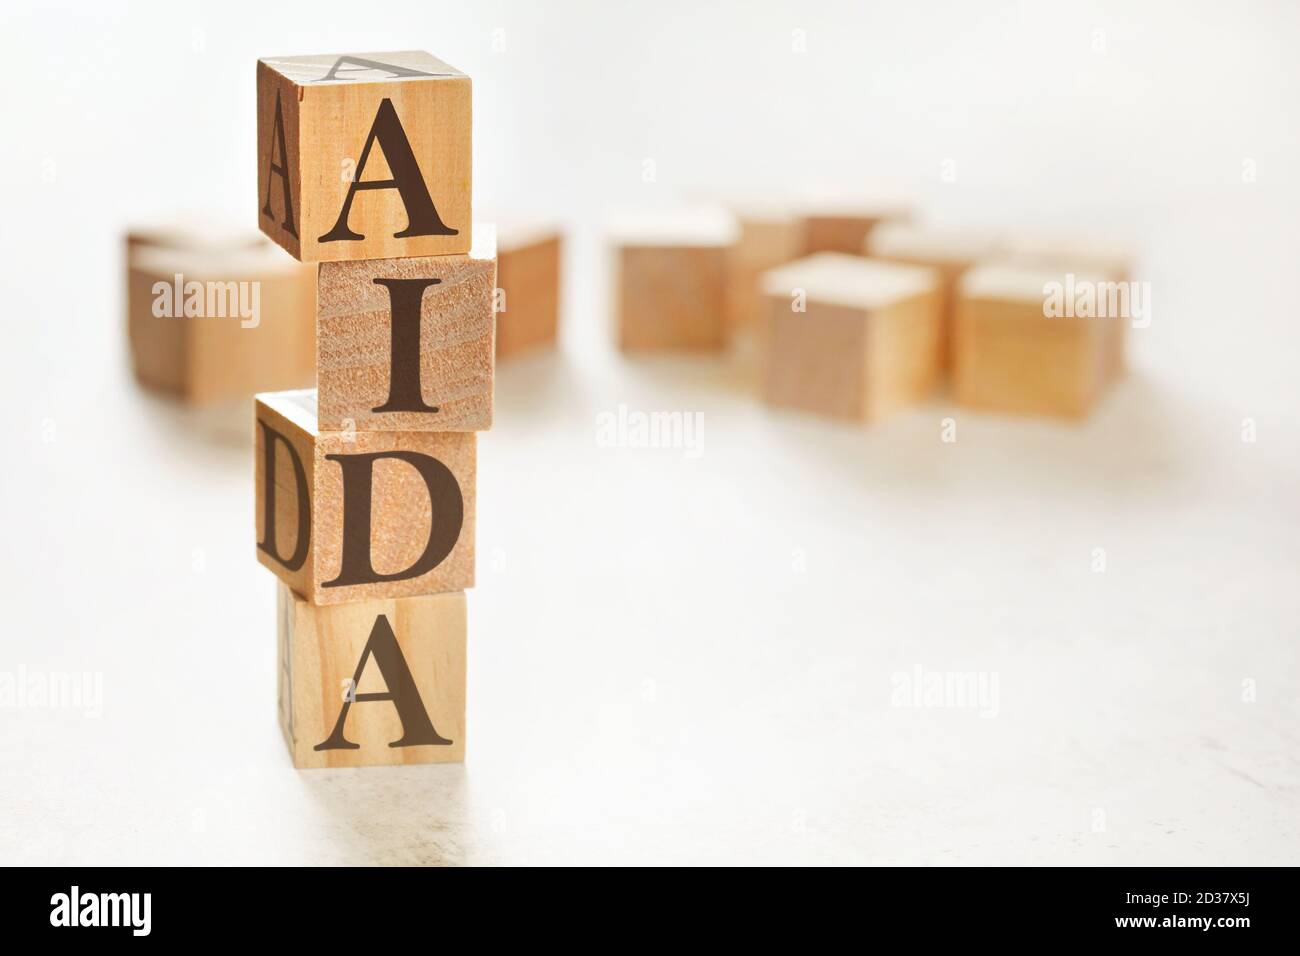 Aida Marketing Concept Stockfotos Und Bilder Kaufen Alamy